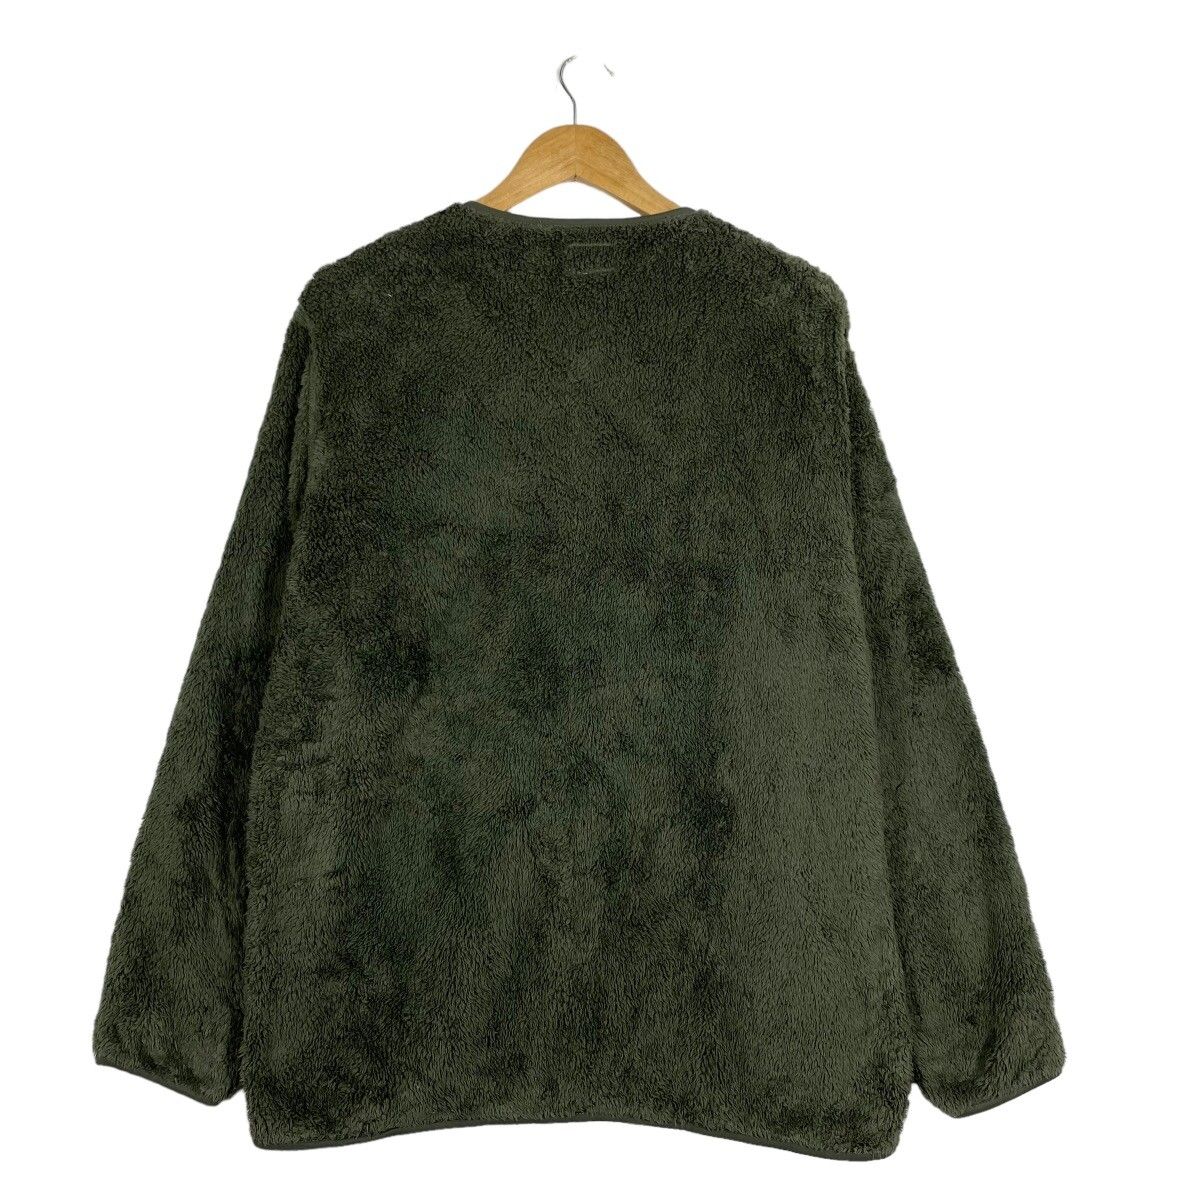 Uniqlo x Engineered Garments Fleece Sweater - 10